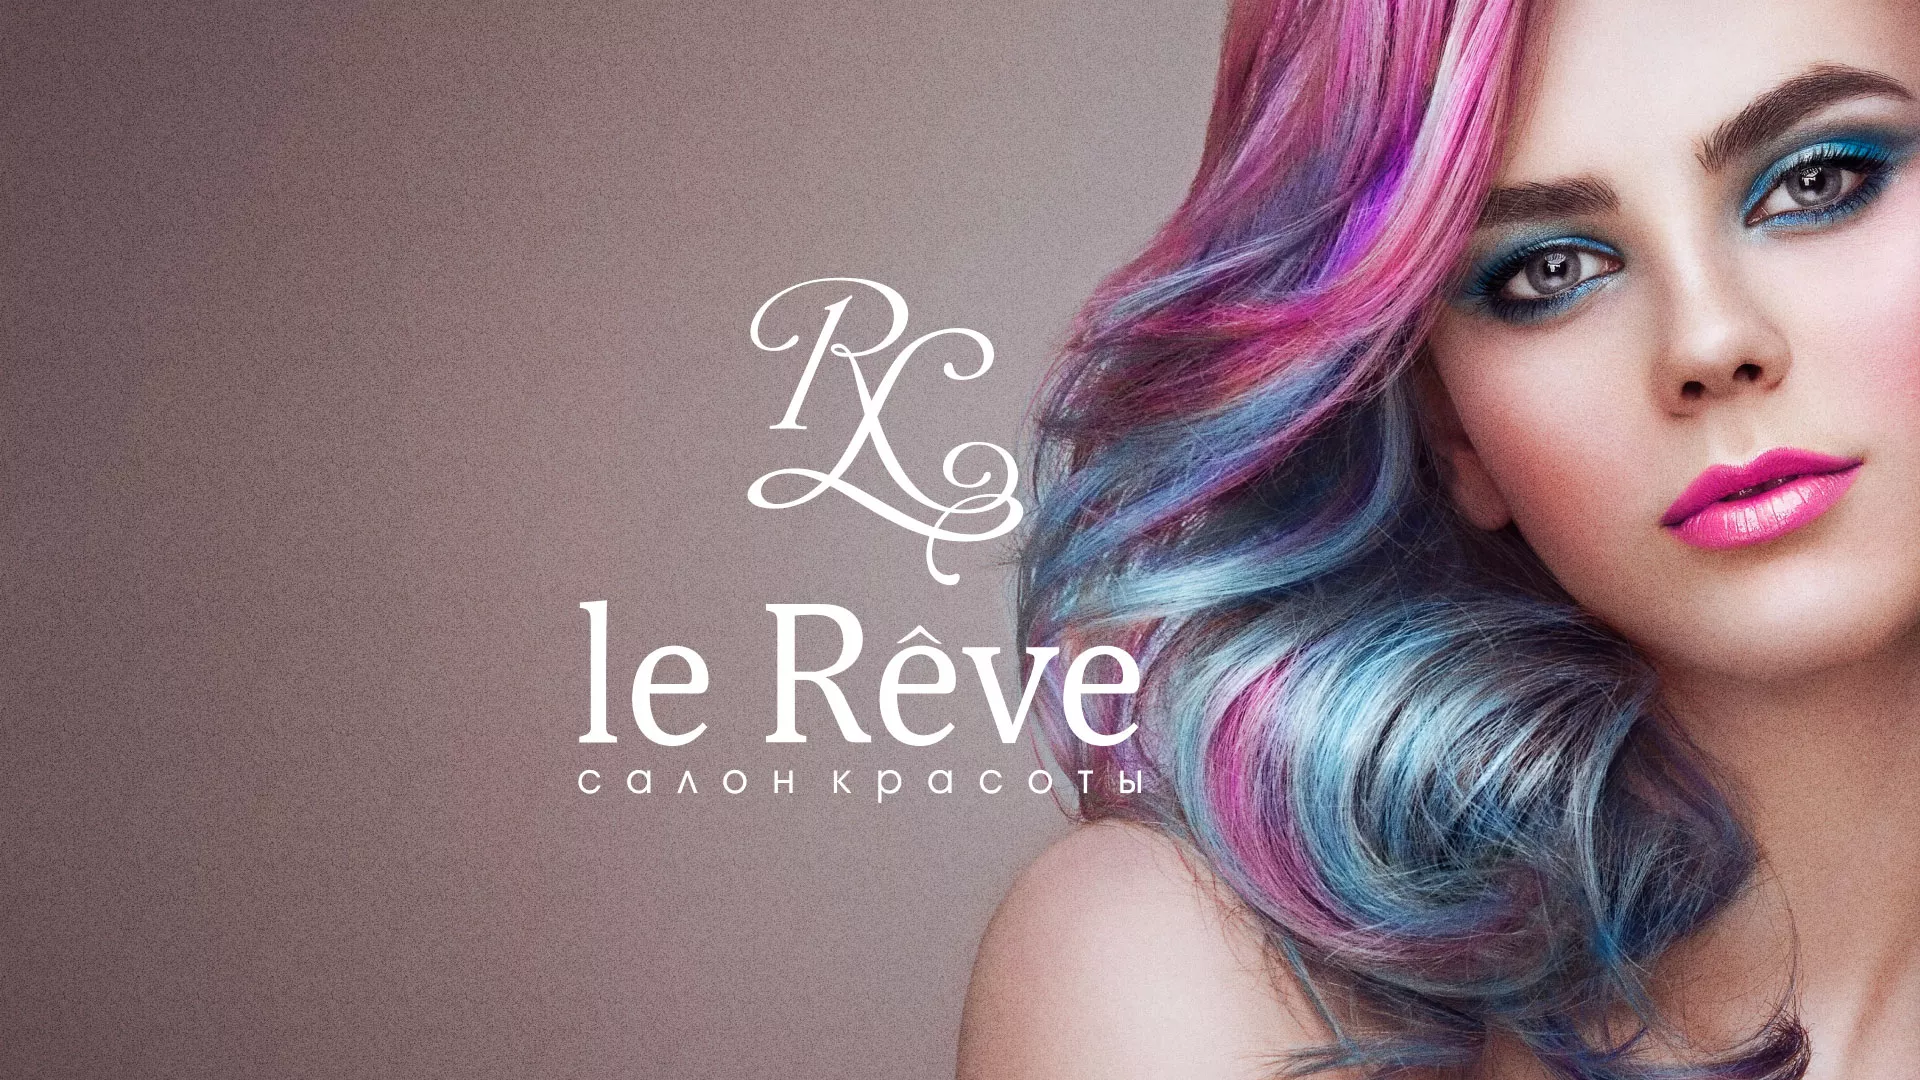 Создание сайта для салона красоты «Le Reve» в Михайлове